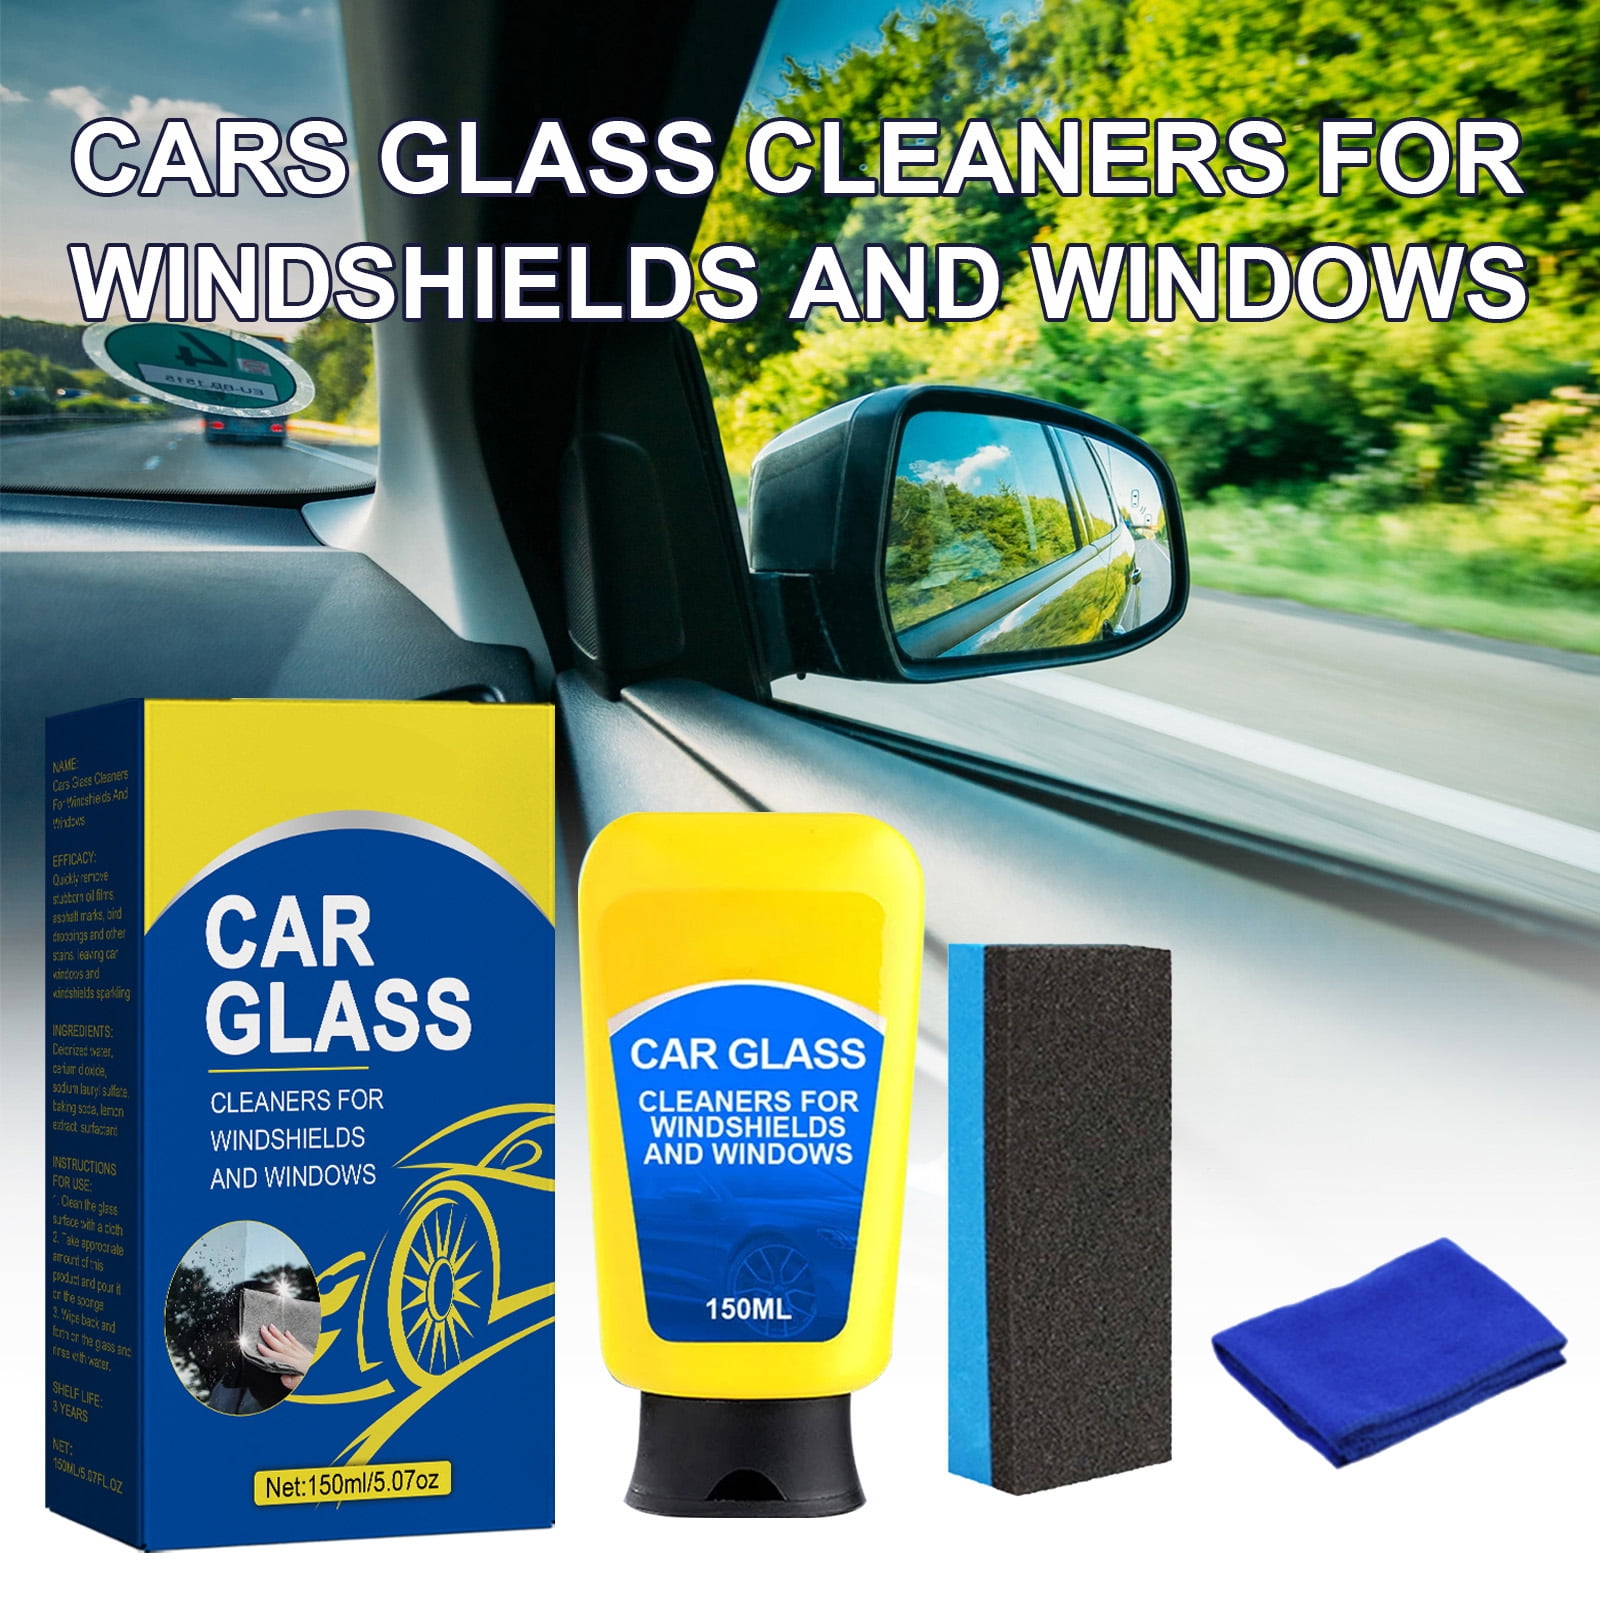 Car Glass Oil Film Cleaner, Sopami Car Coating Spray, Sopami Oil